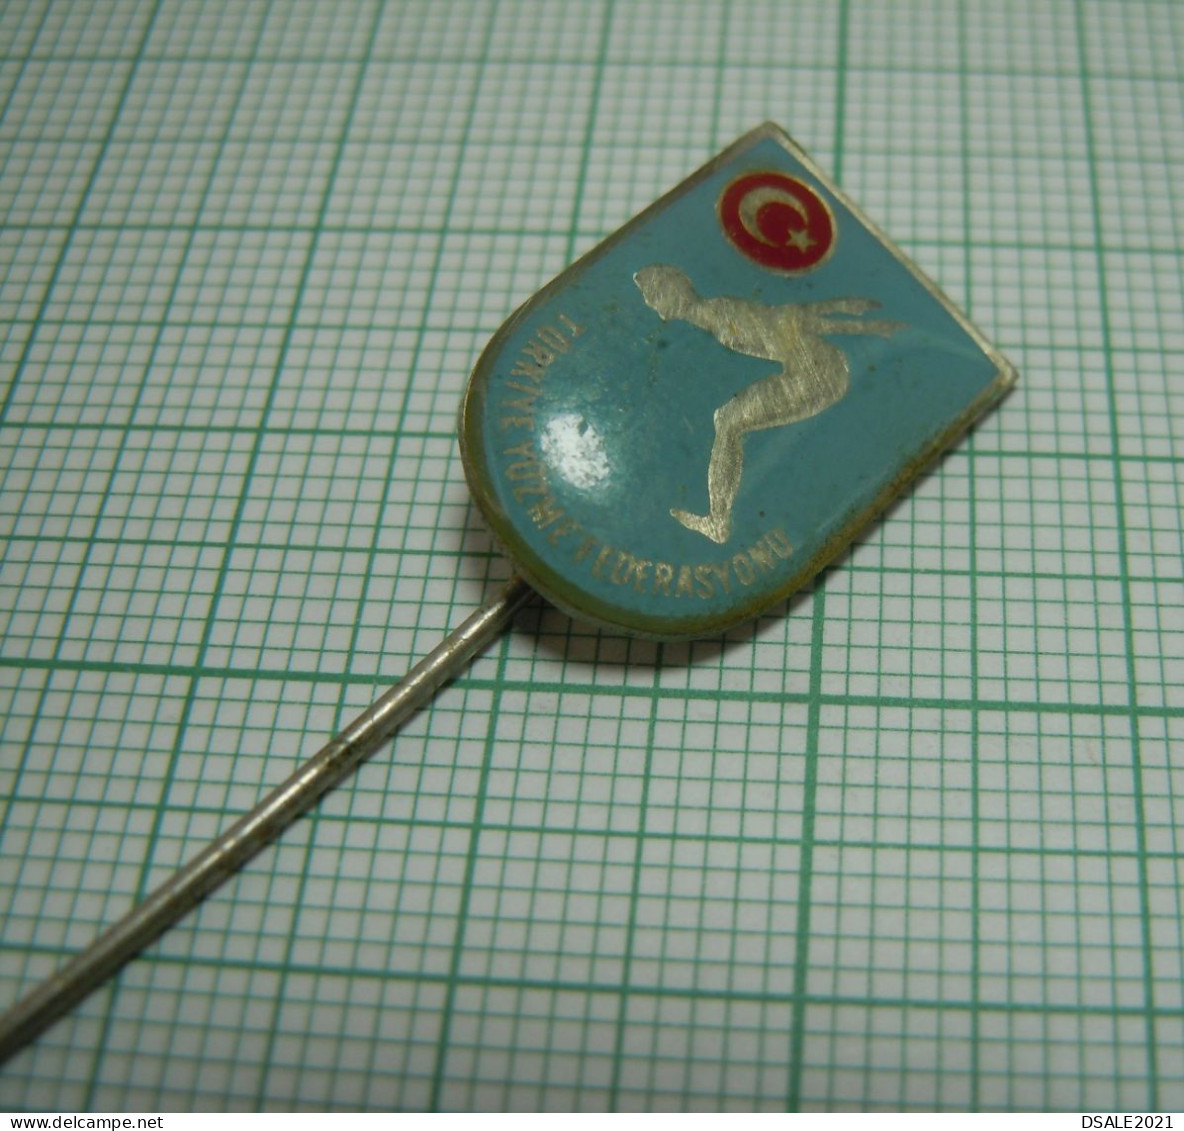 Turkey, Turkish Swimming Federation, TYF Türkiye Yüzme Federasyonu, Vintage Pin Badge, Abzeichen (ds1206) - Schwimmen